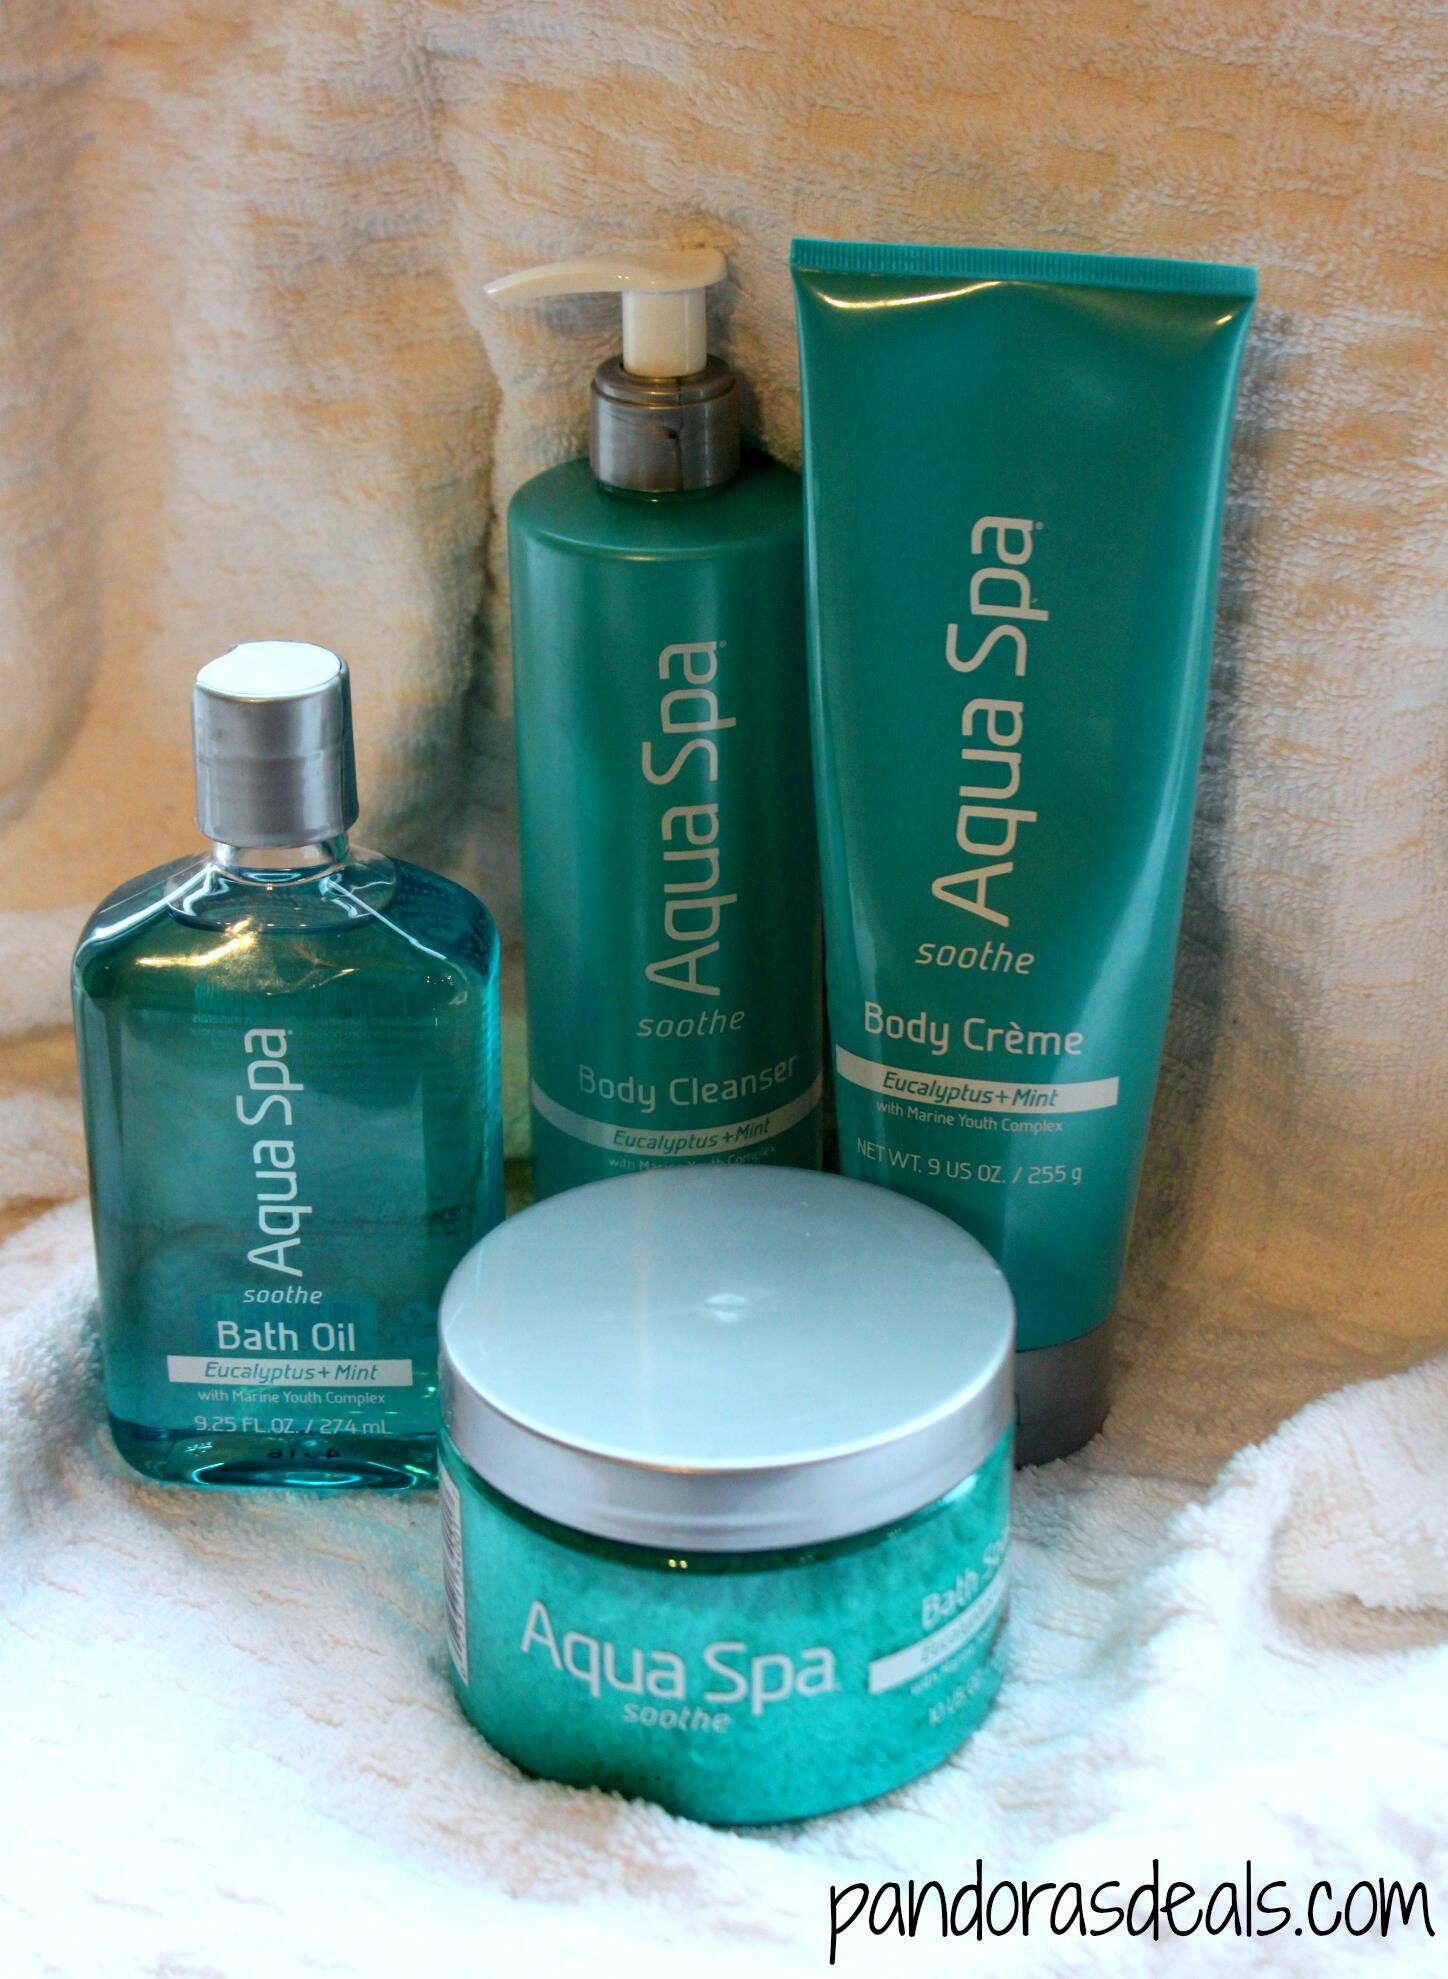 Aqua Spa Soothe Products